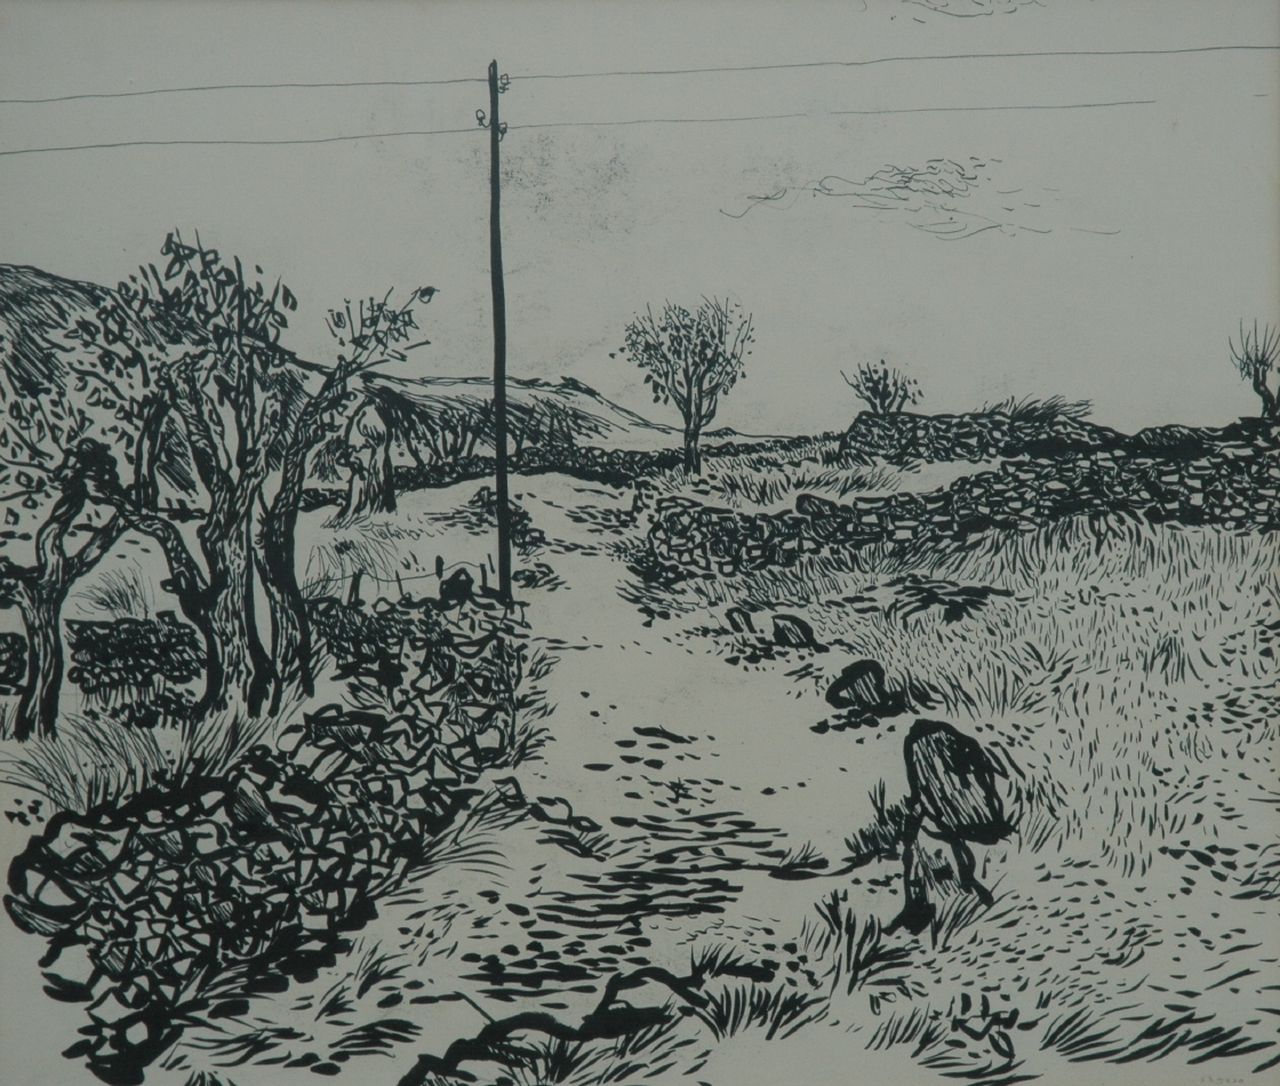 Overmans M.  | Matthijs 'Thijs' Overmans, A landscape, Ausziehtusche auf Papier 50,3 x 61,0 cm